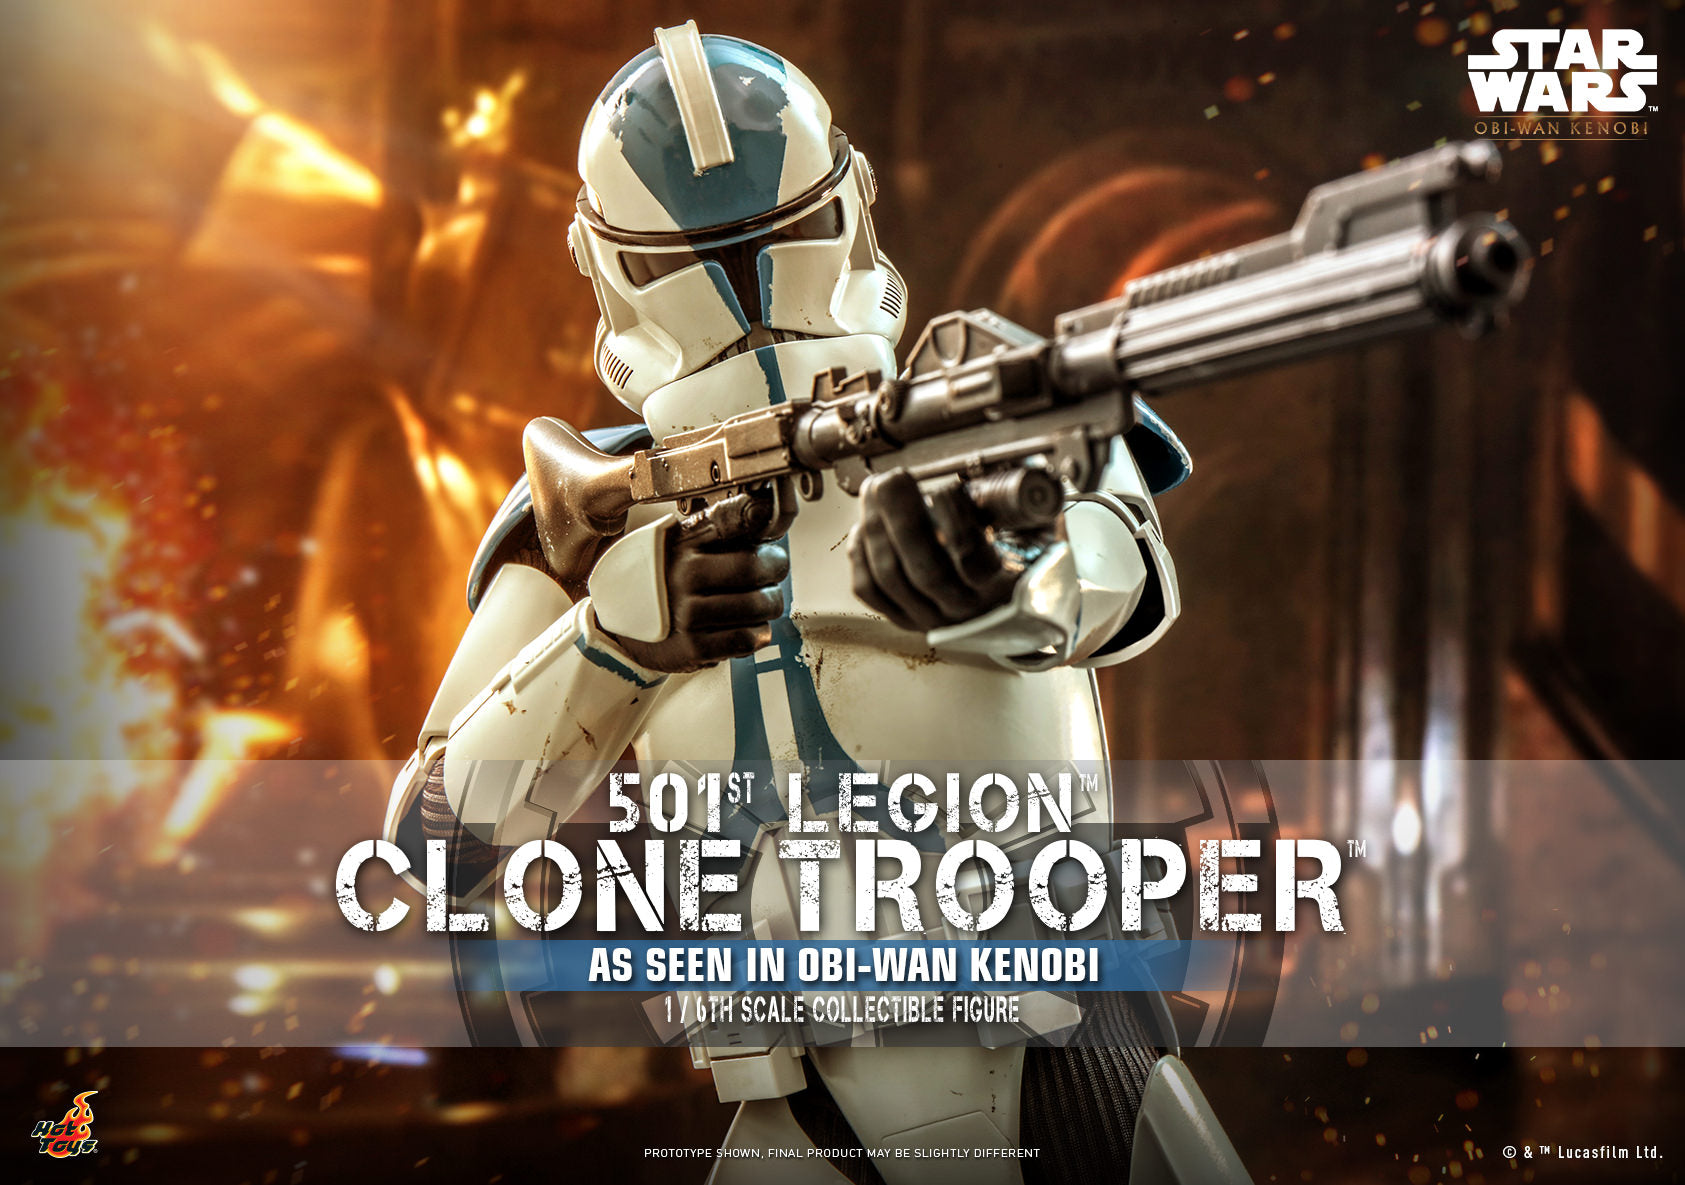 Clone Trooper: 501st Legion: Star Wars: Obi-Wan Kenobi: TMS92 Hot Toys